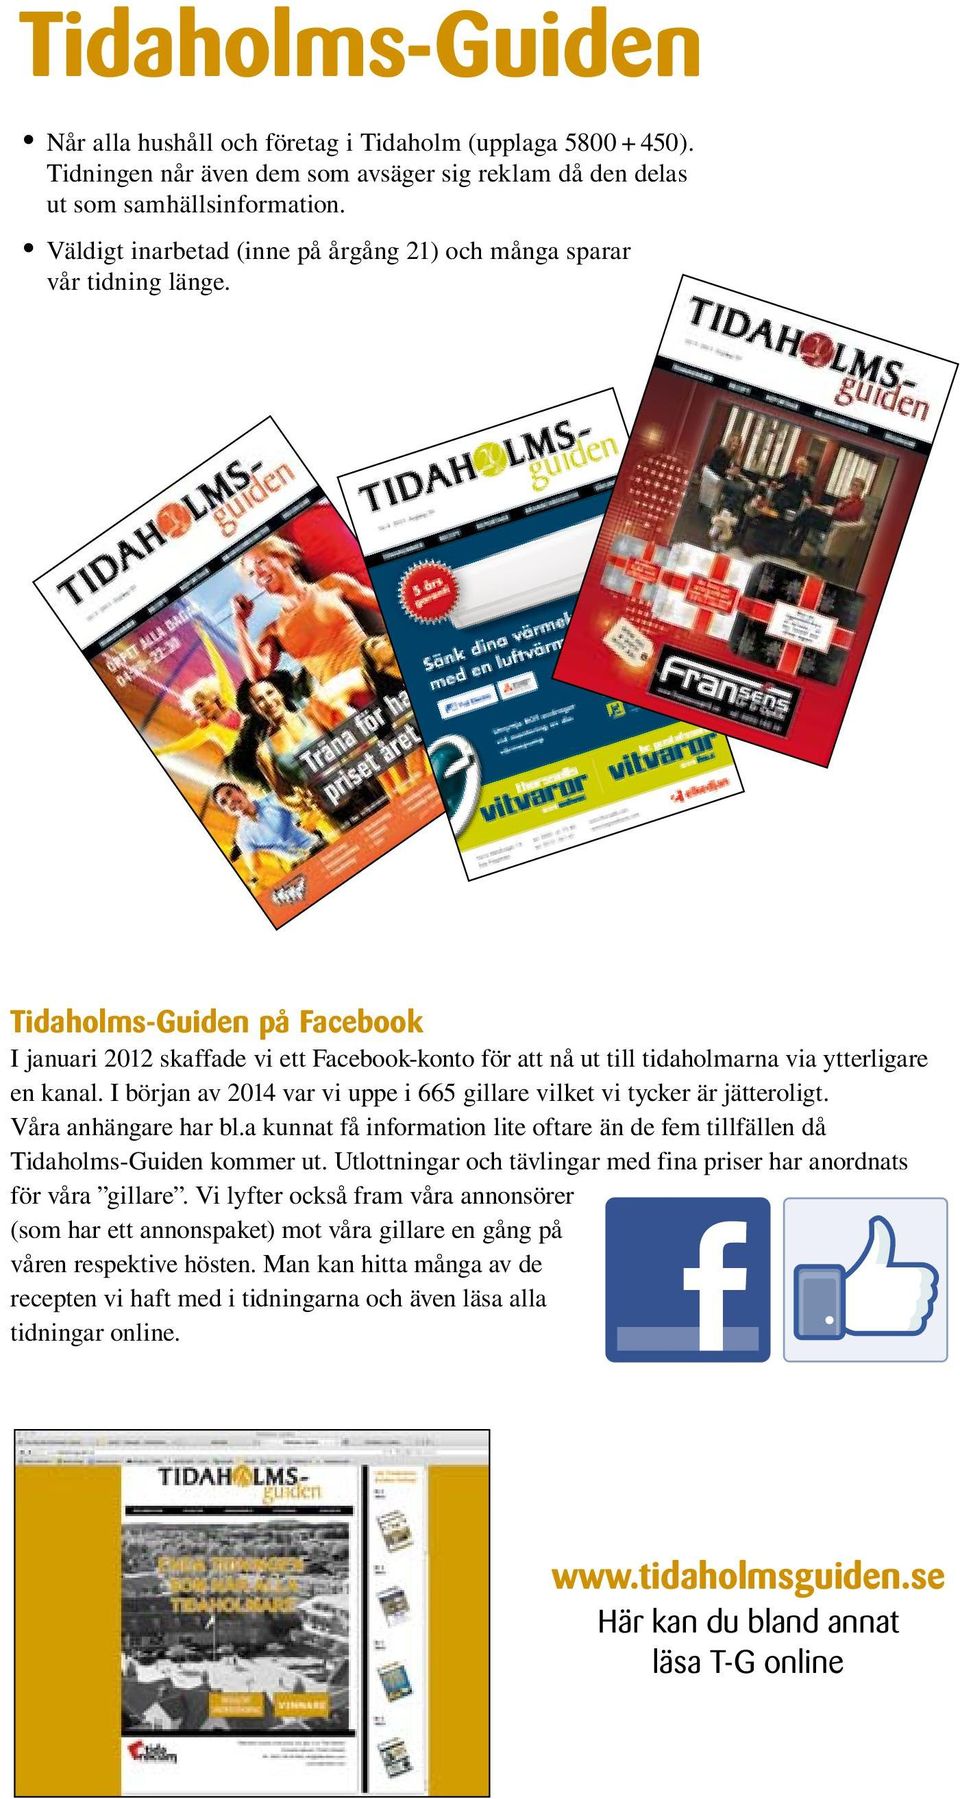 idaholms-guiden på Facebook januari 2012 skaffade vi ett Facebook-konto för att nå ut till tidaholmarna via ytterligare en kanal.